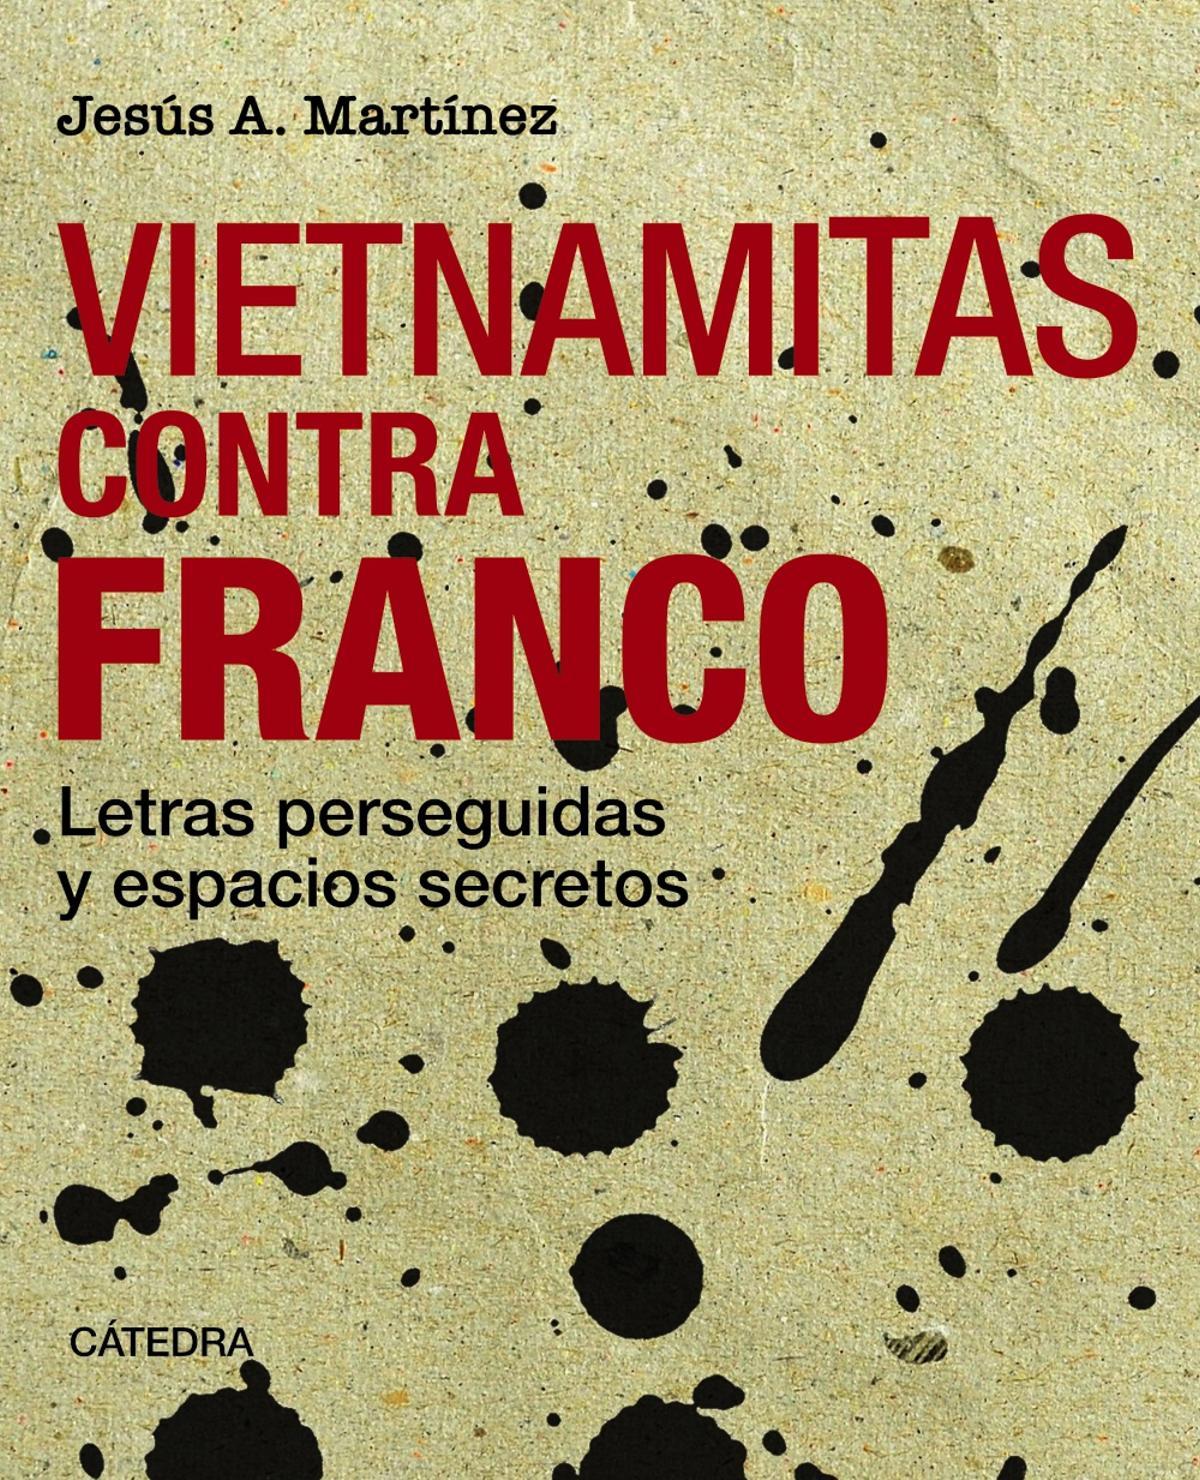 'Vietnamitas contra Franco', de Jesús A. Martínez